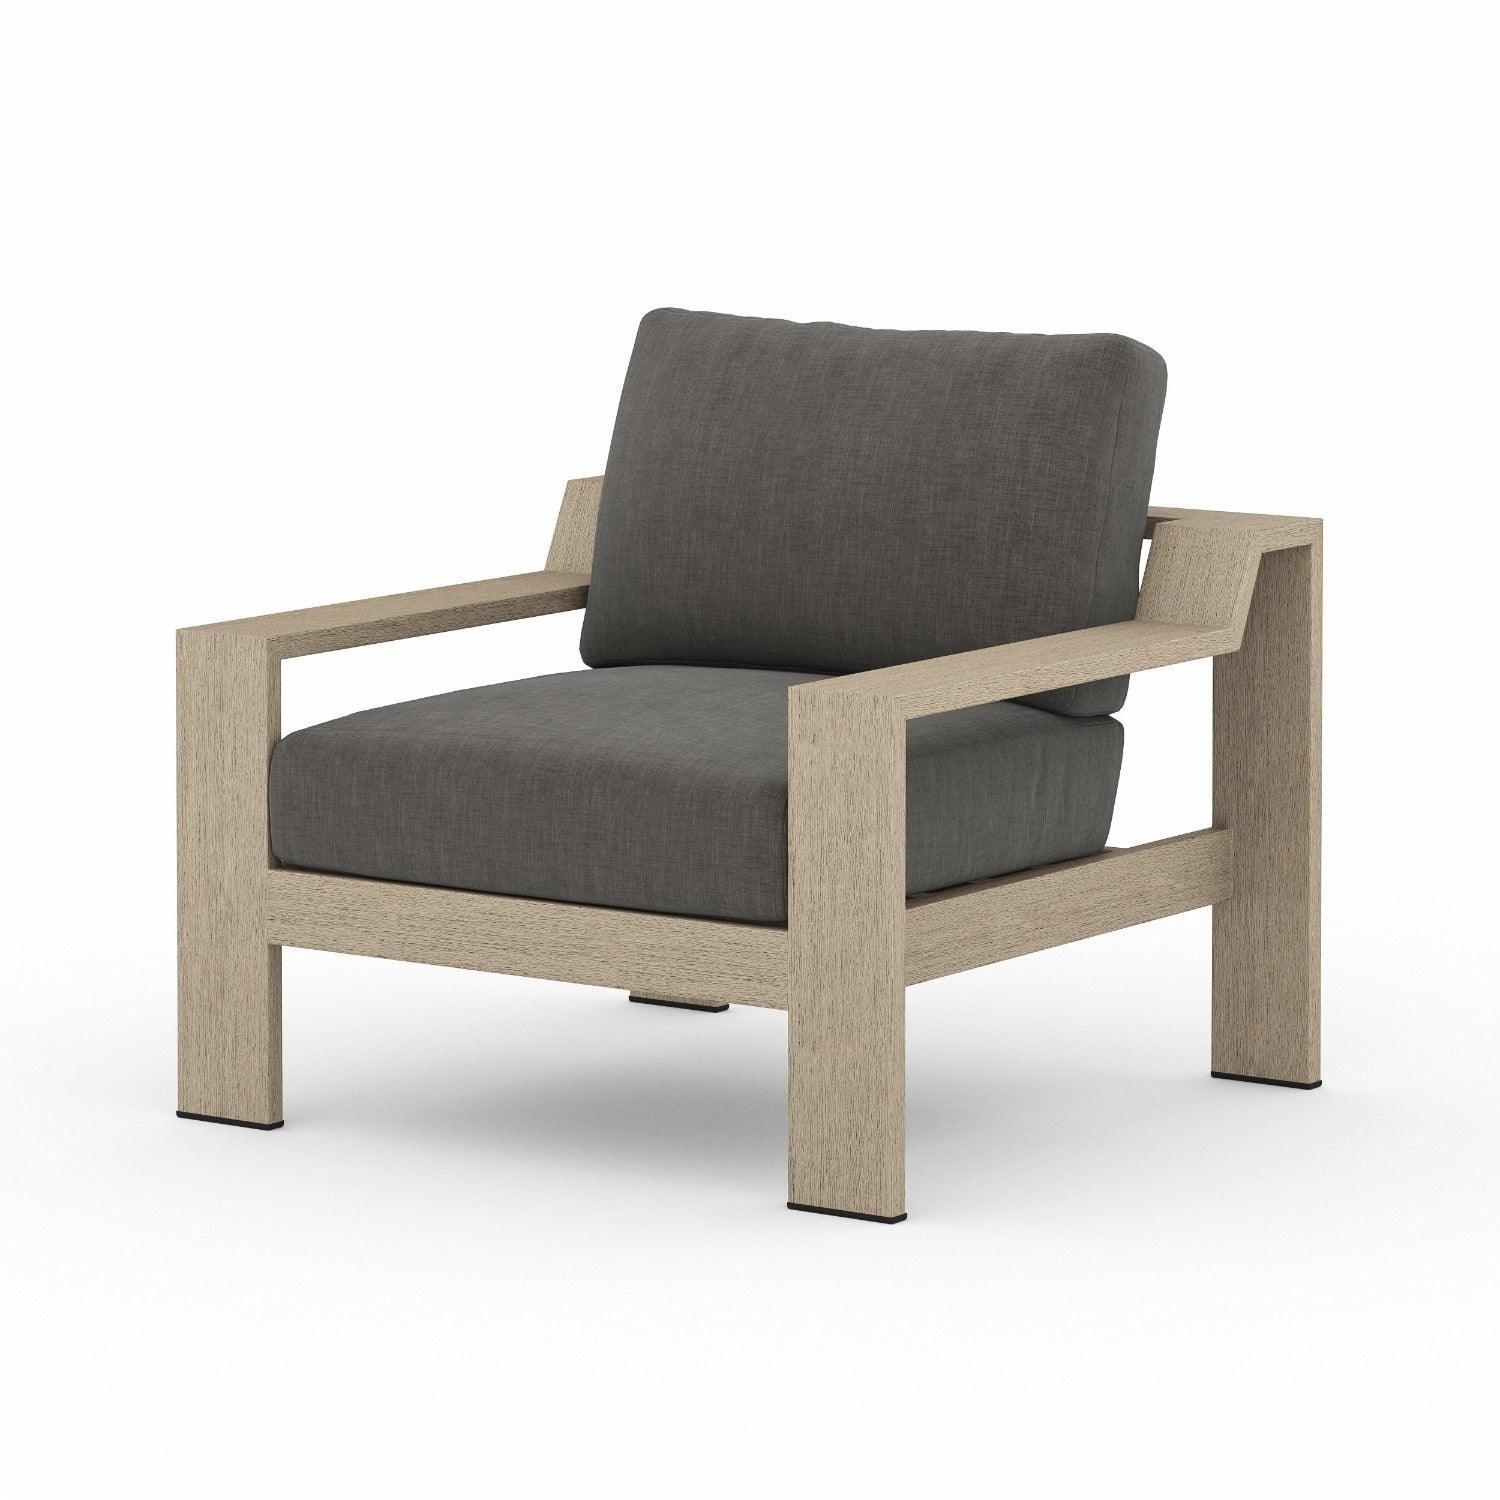 MONTEREY OUTDOOR CHAIR, CHARCOAL - Reimagine Designs - new, Outdoor, outdoor armchair, Outdoor Armchairs